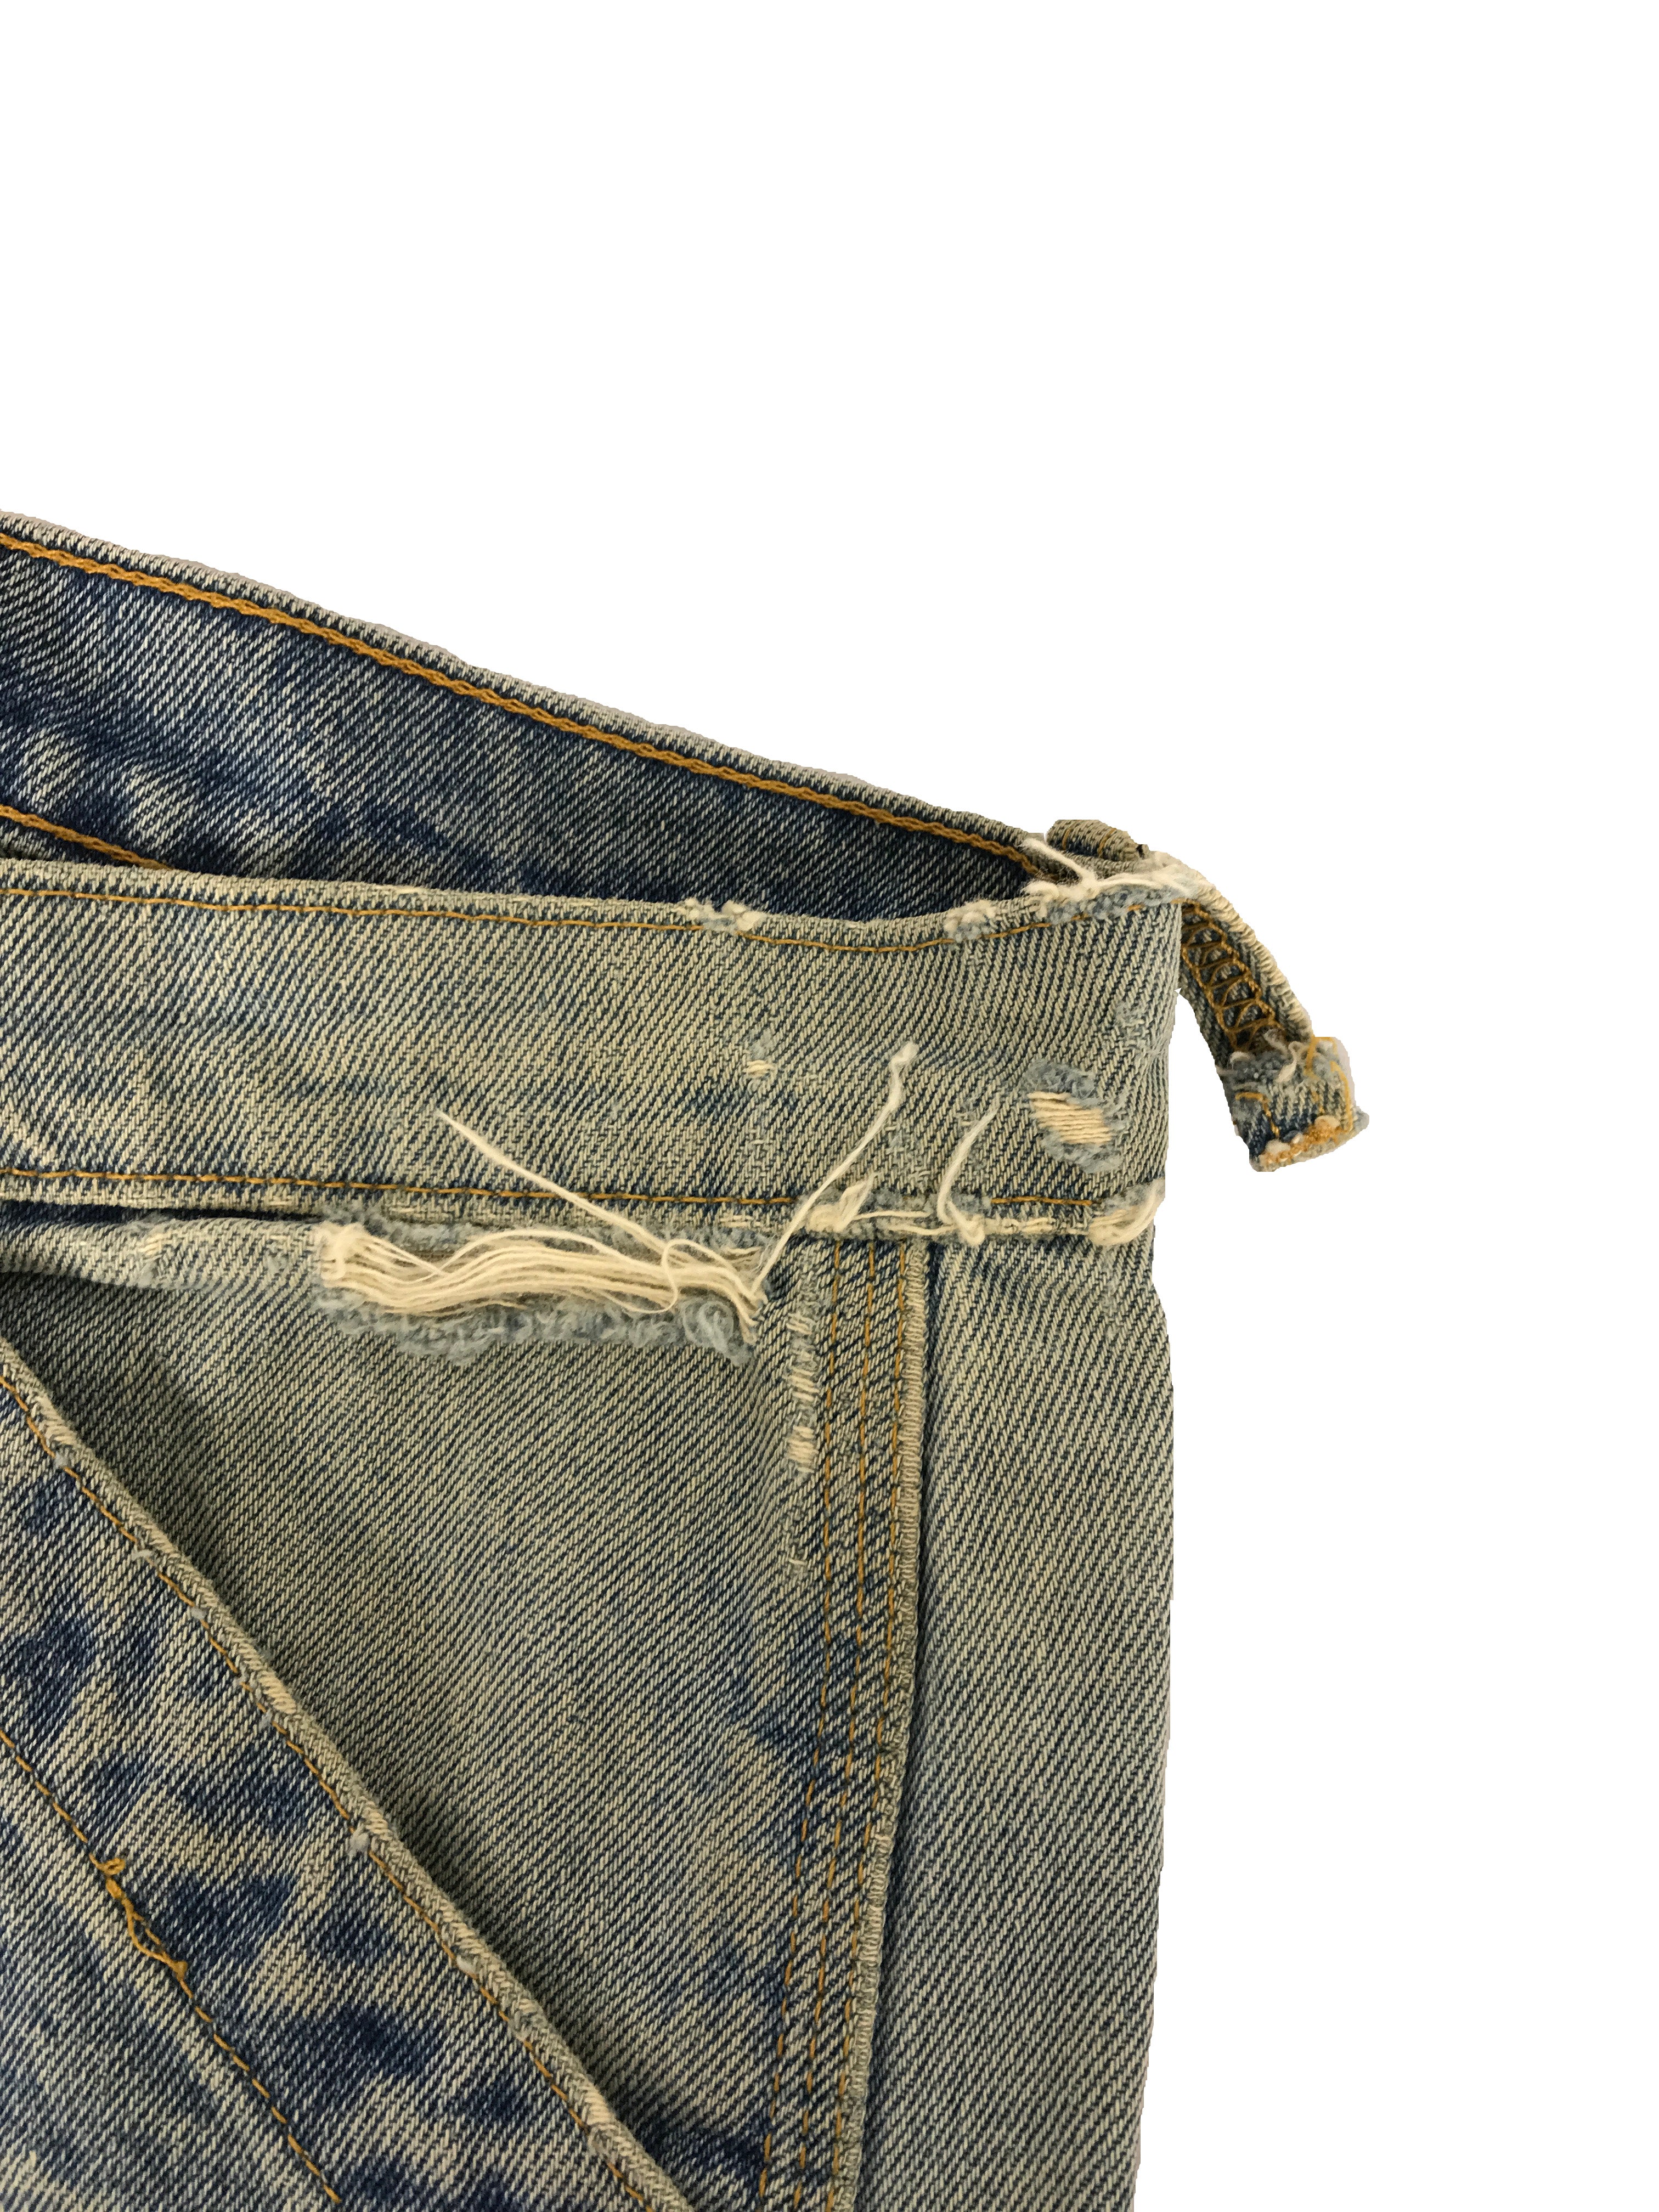 Polo by Ralph Lauren Light Wash Denim Carpenter Jeans Men's Size 31 x 34